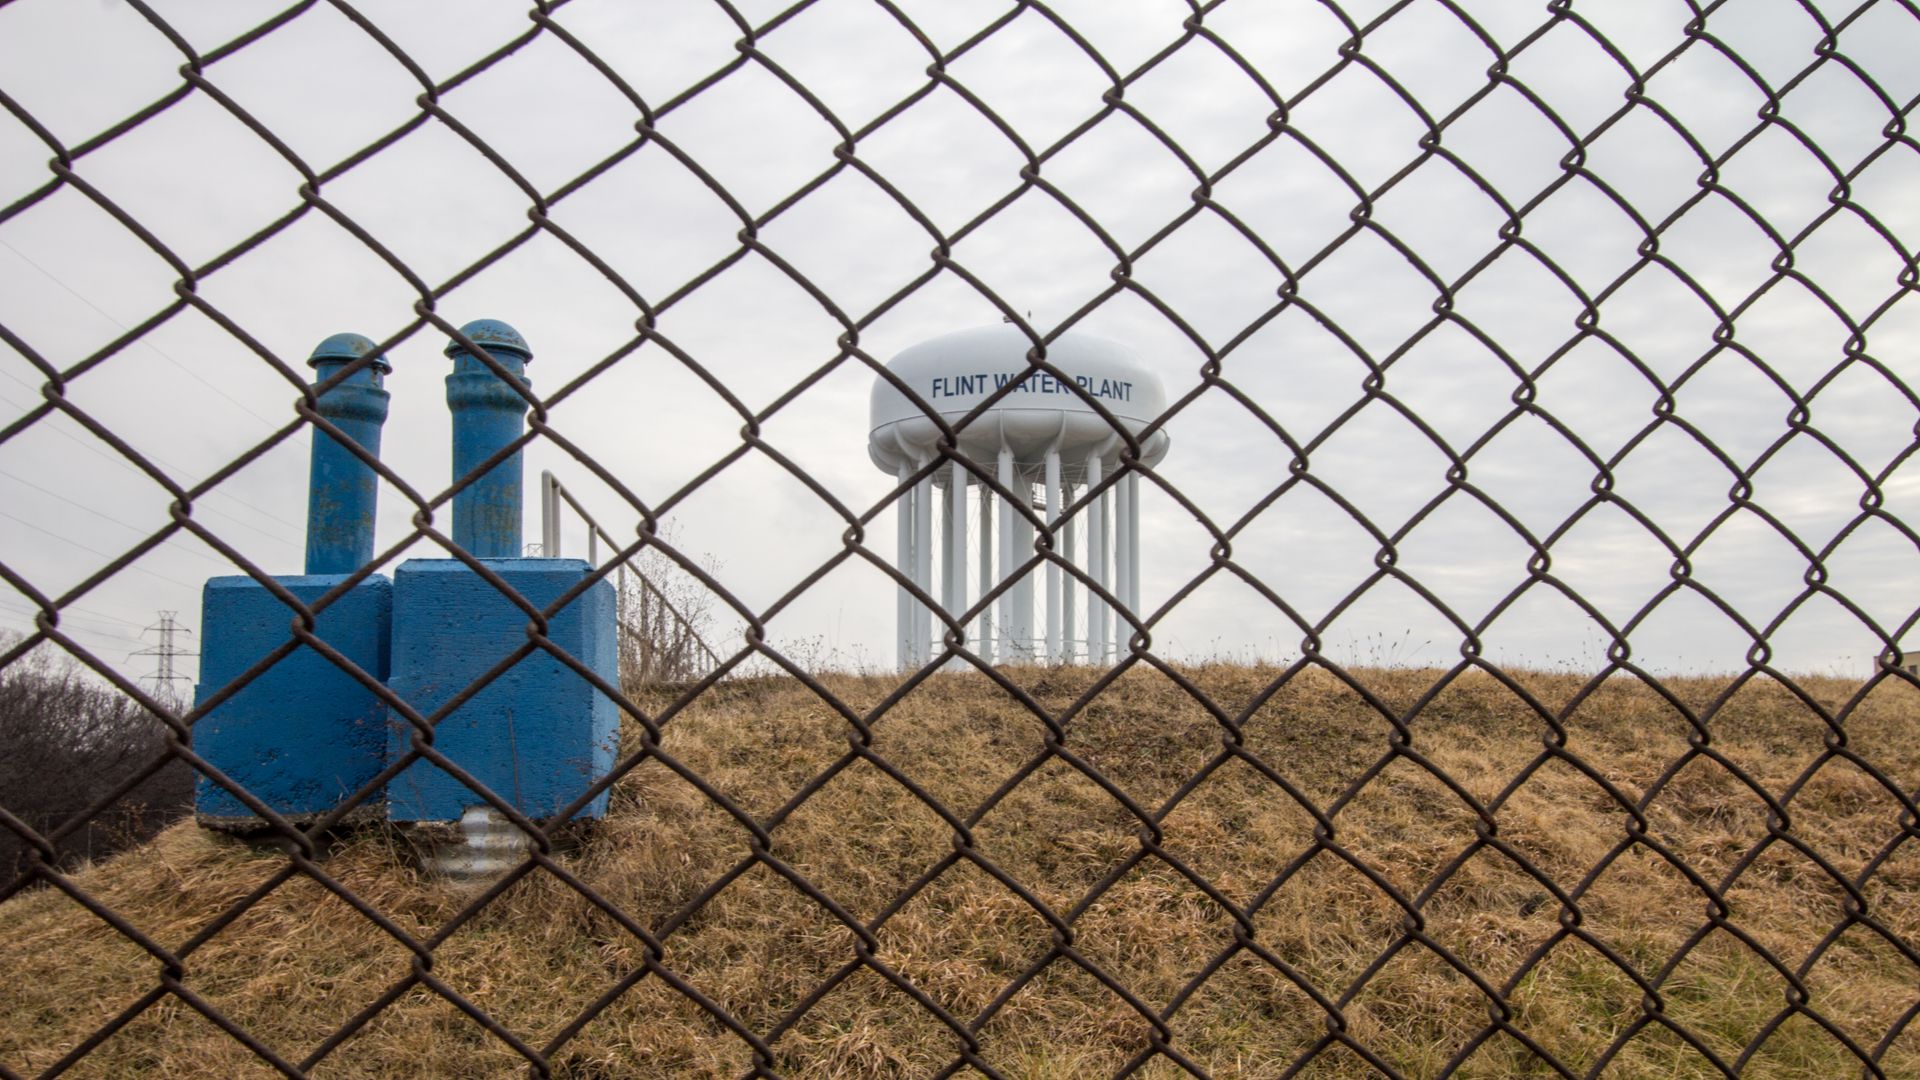 Flint, Michigan water plant